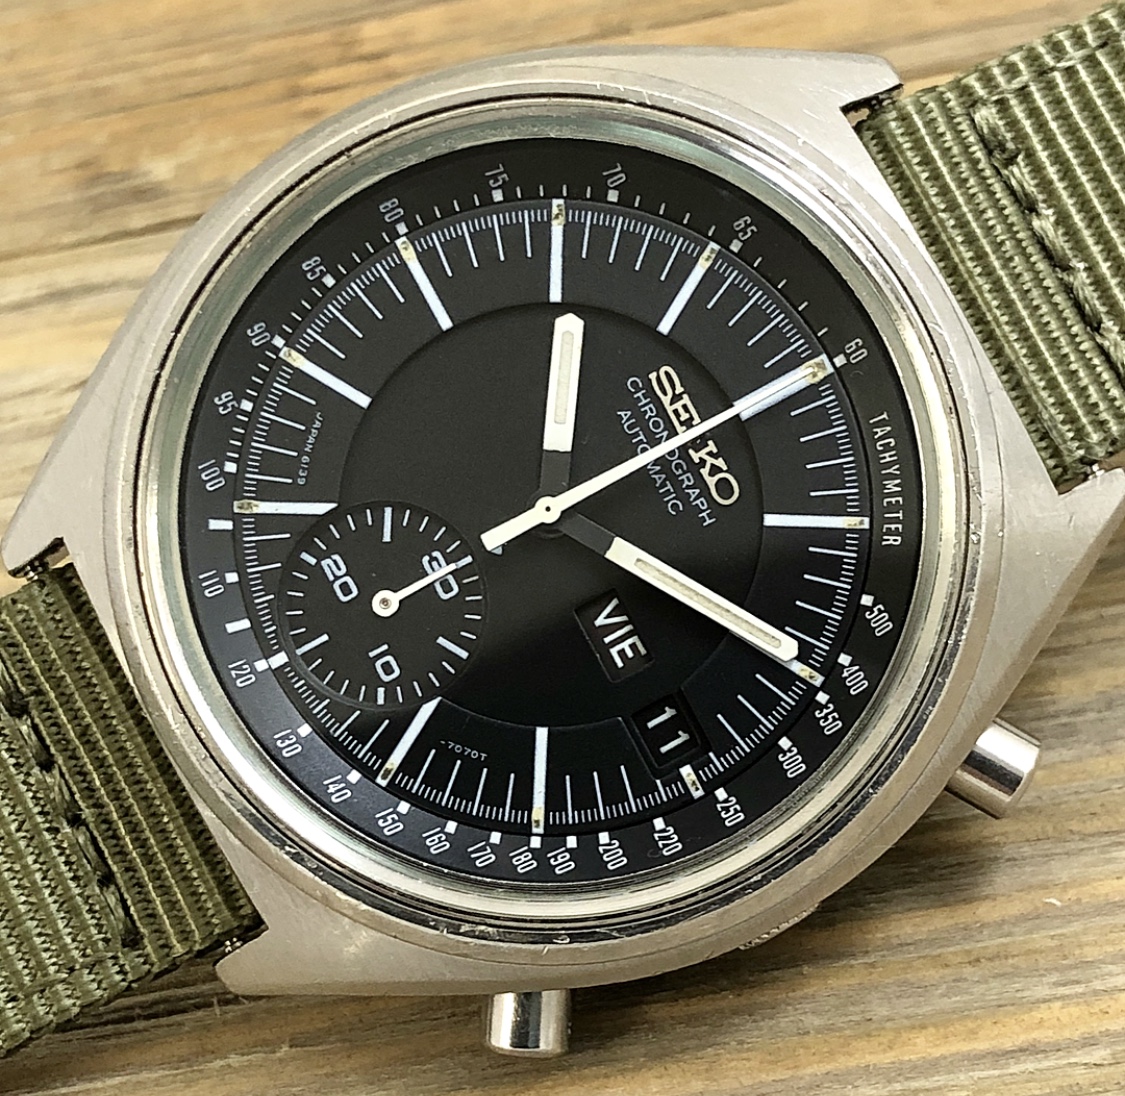 1974 Seiko 6139-7070 Automatic Chronograph “Speedy”